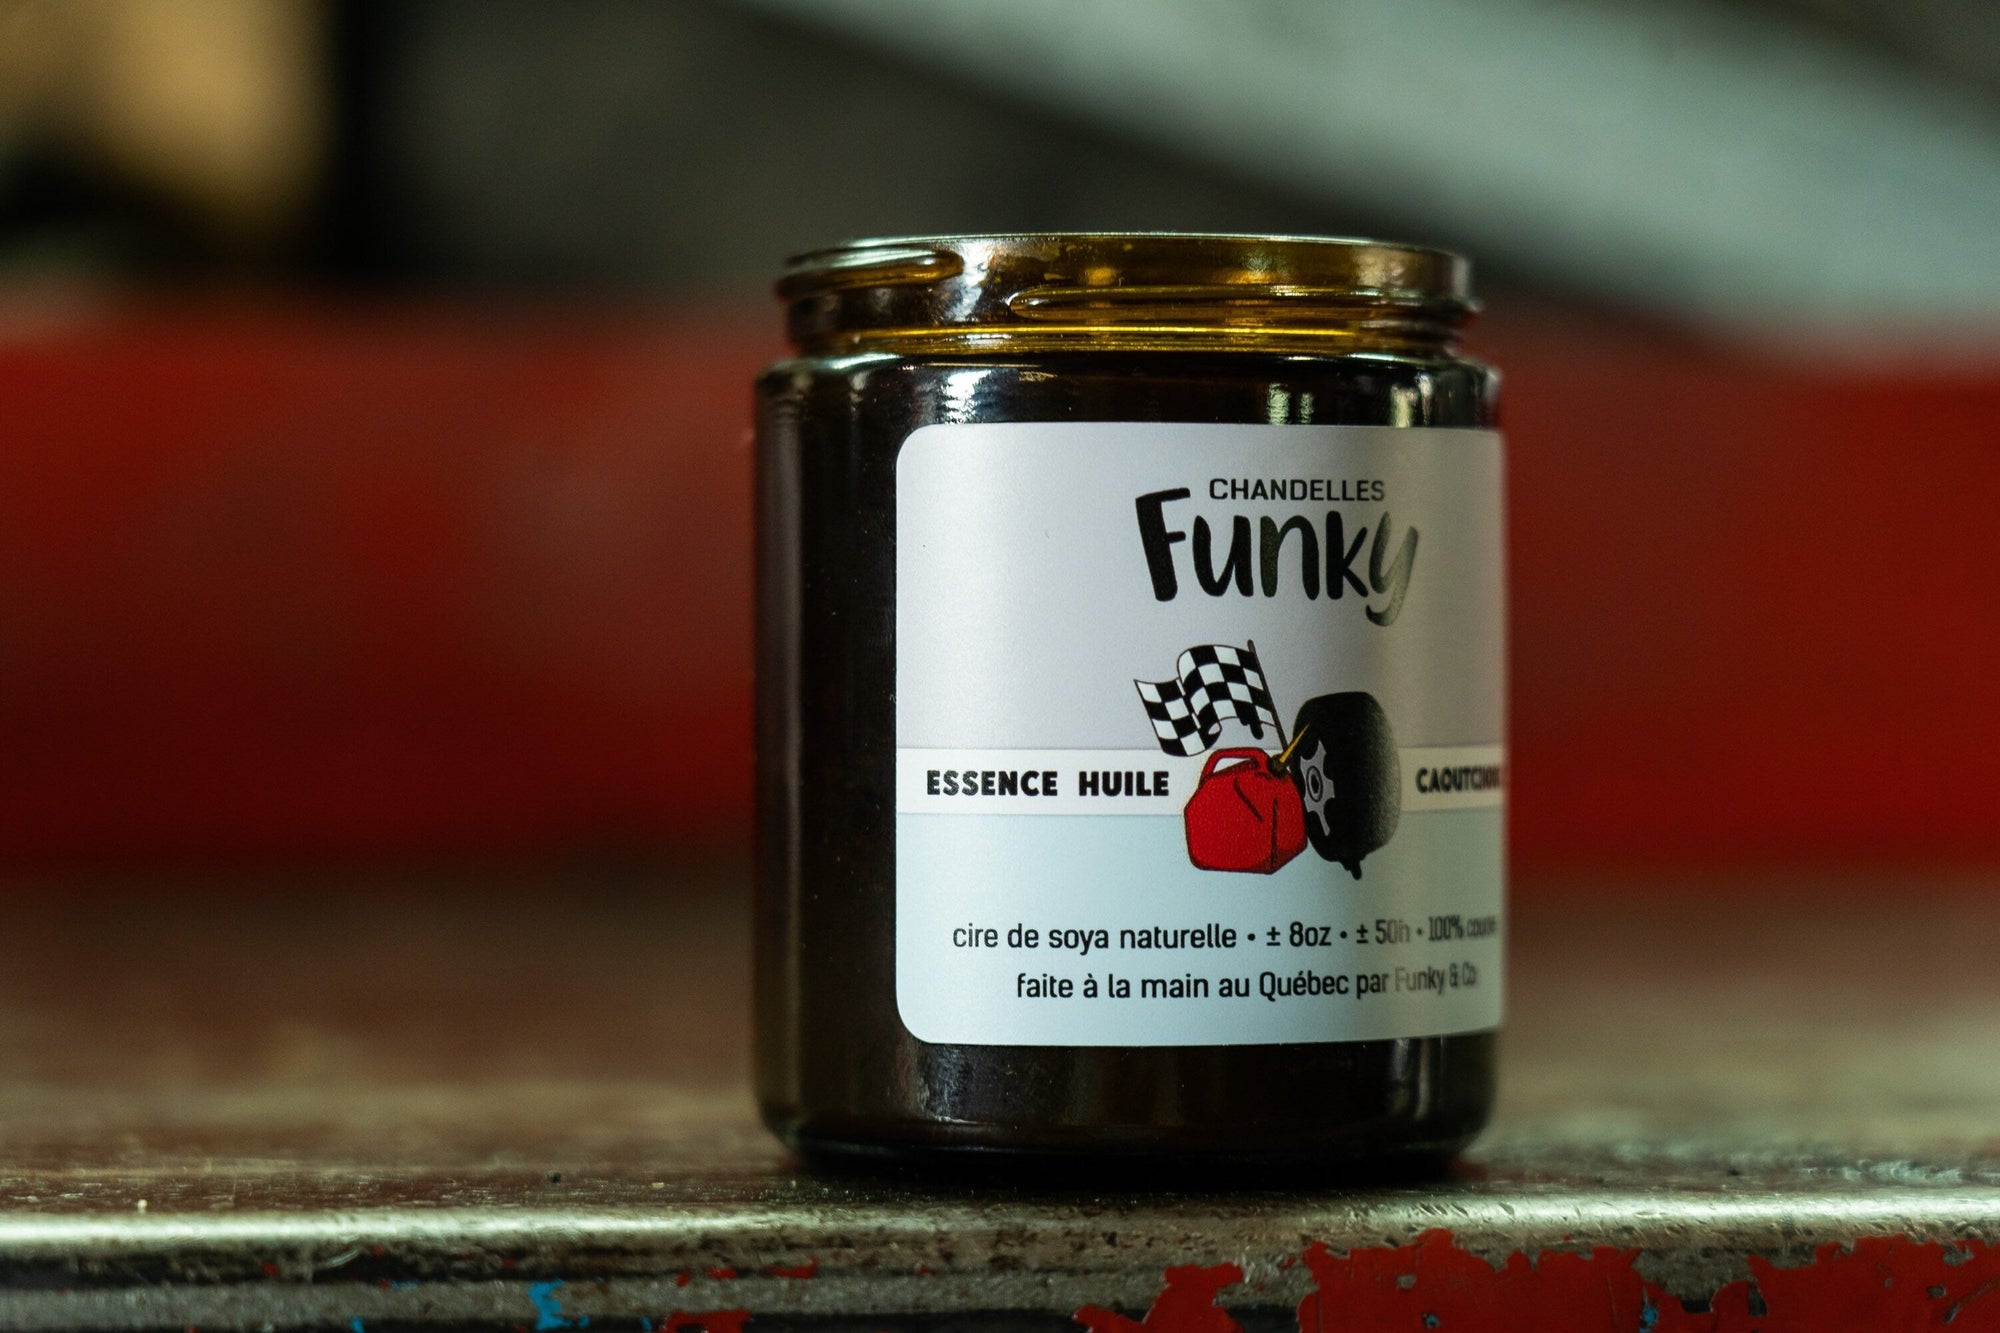 Chandelle Essence Huile - Funky - Funky & Co.